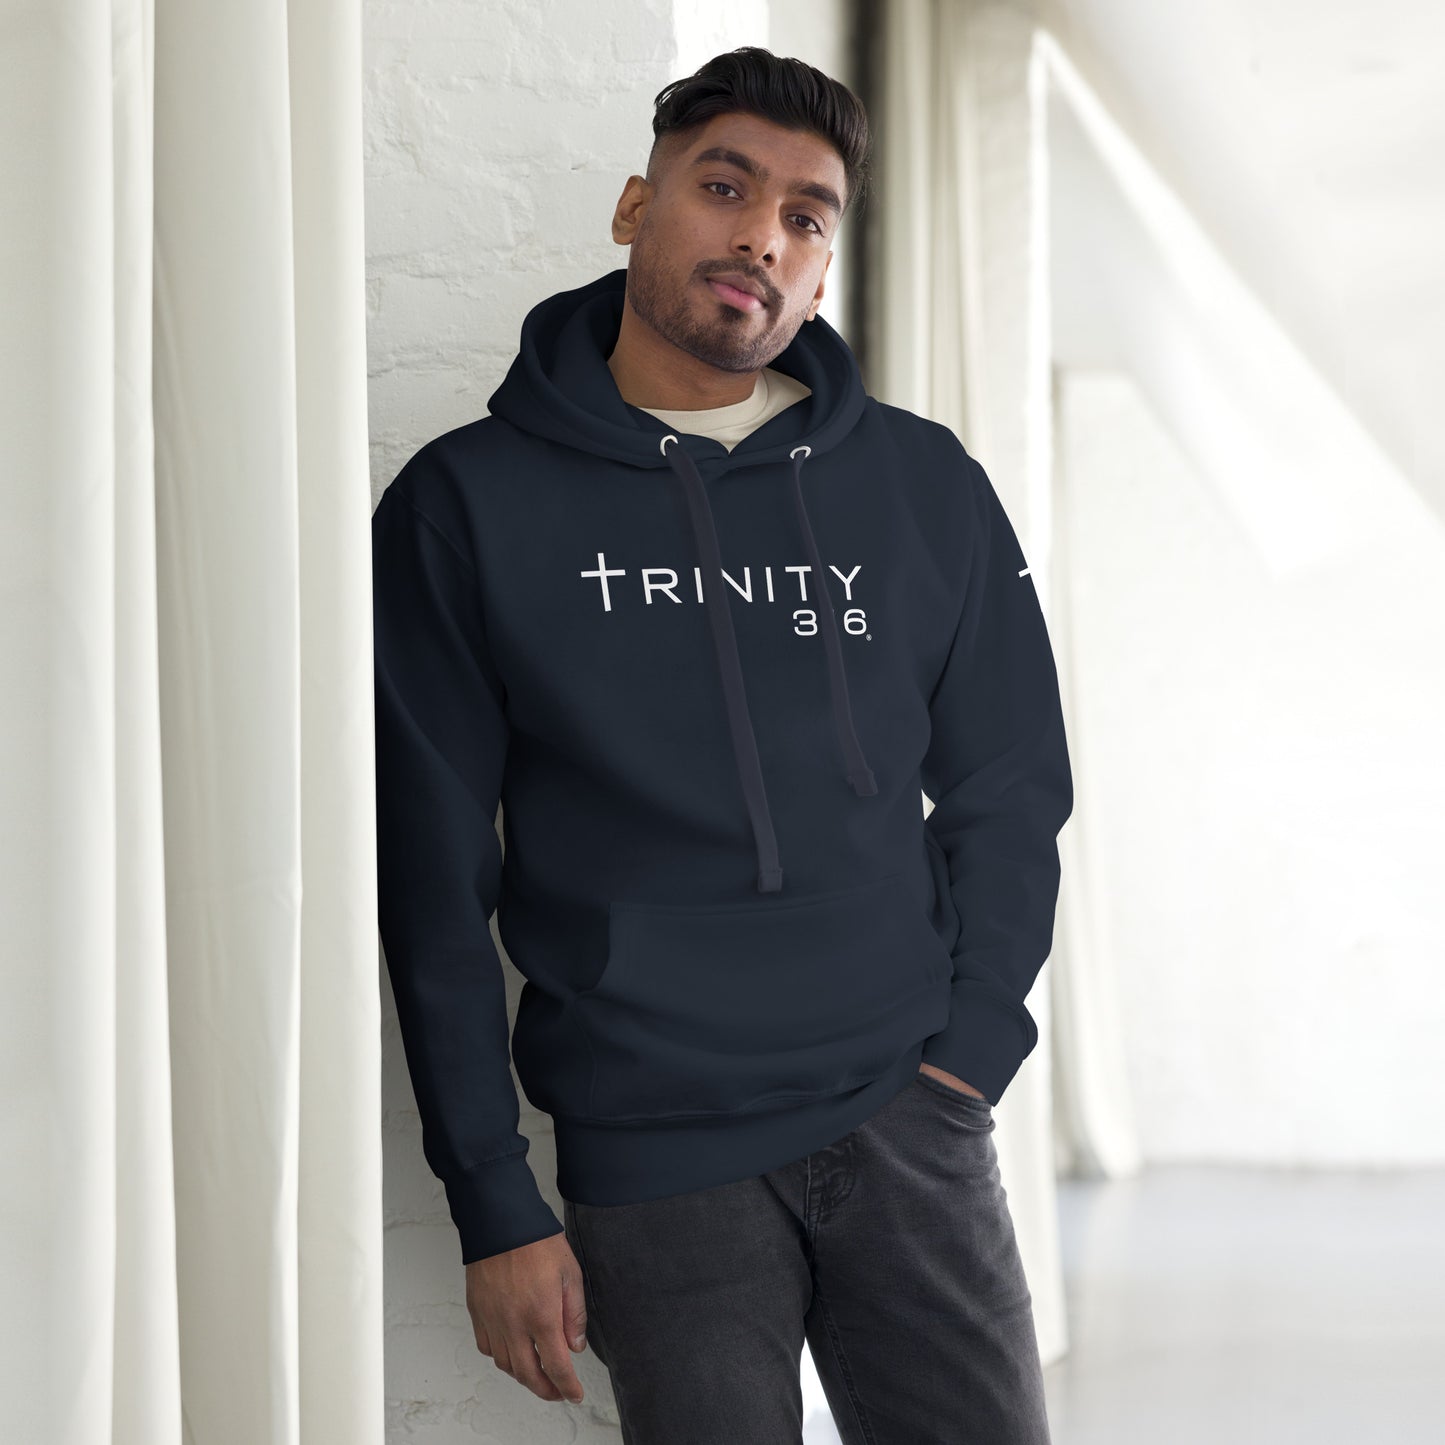 Trinity 316 Hoodie V2